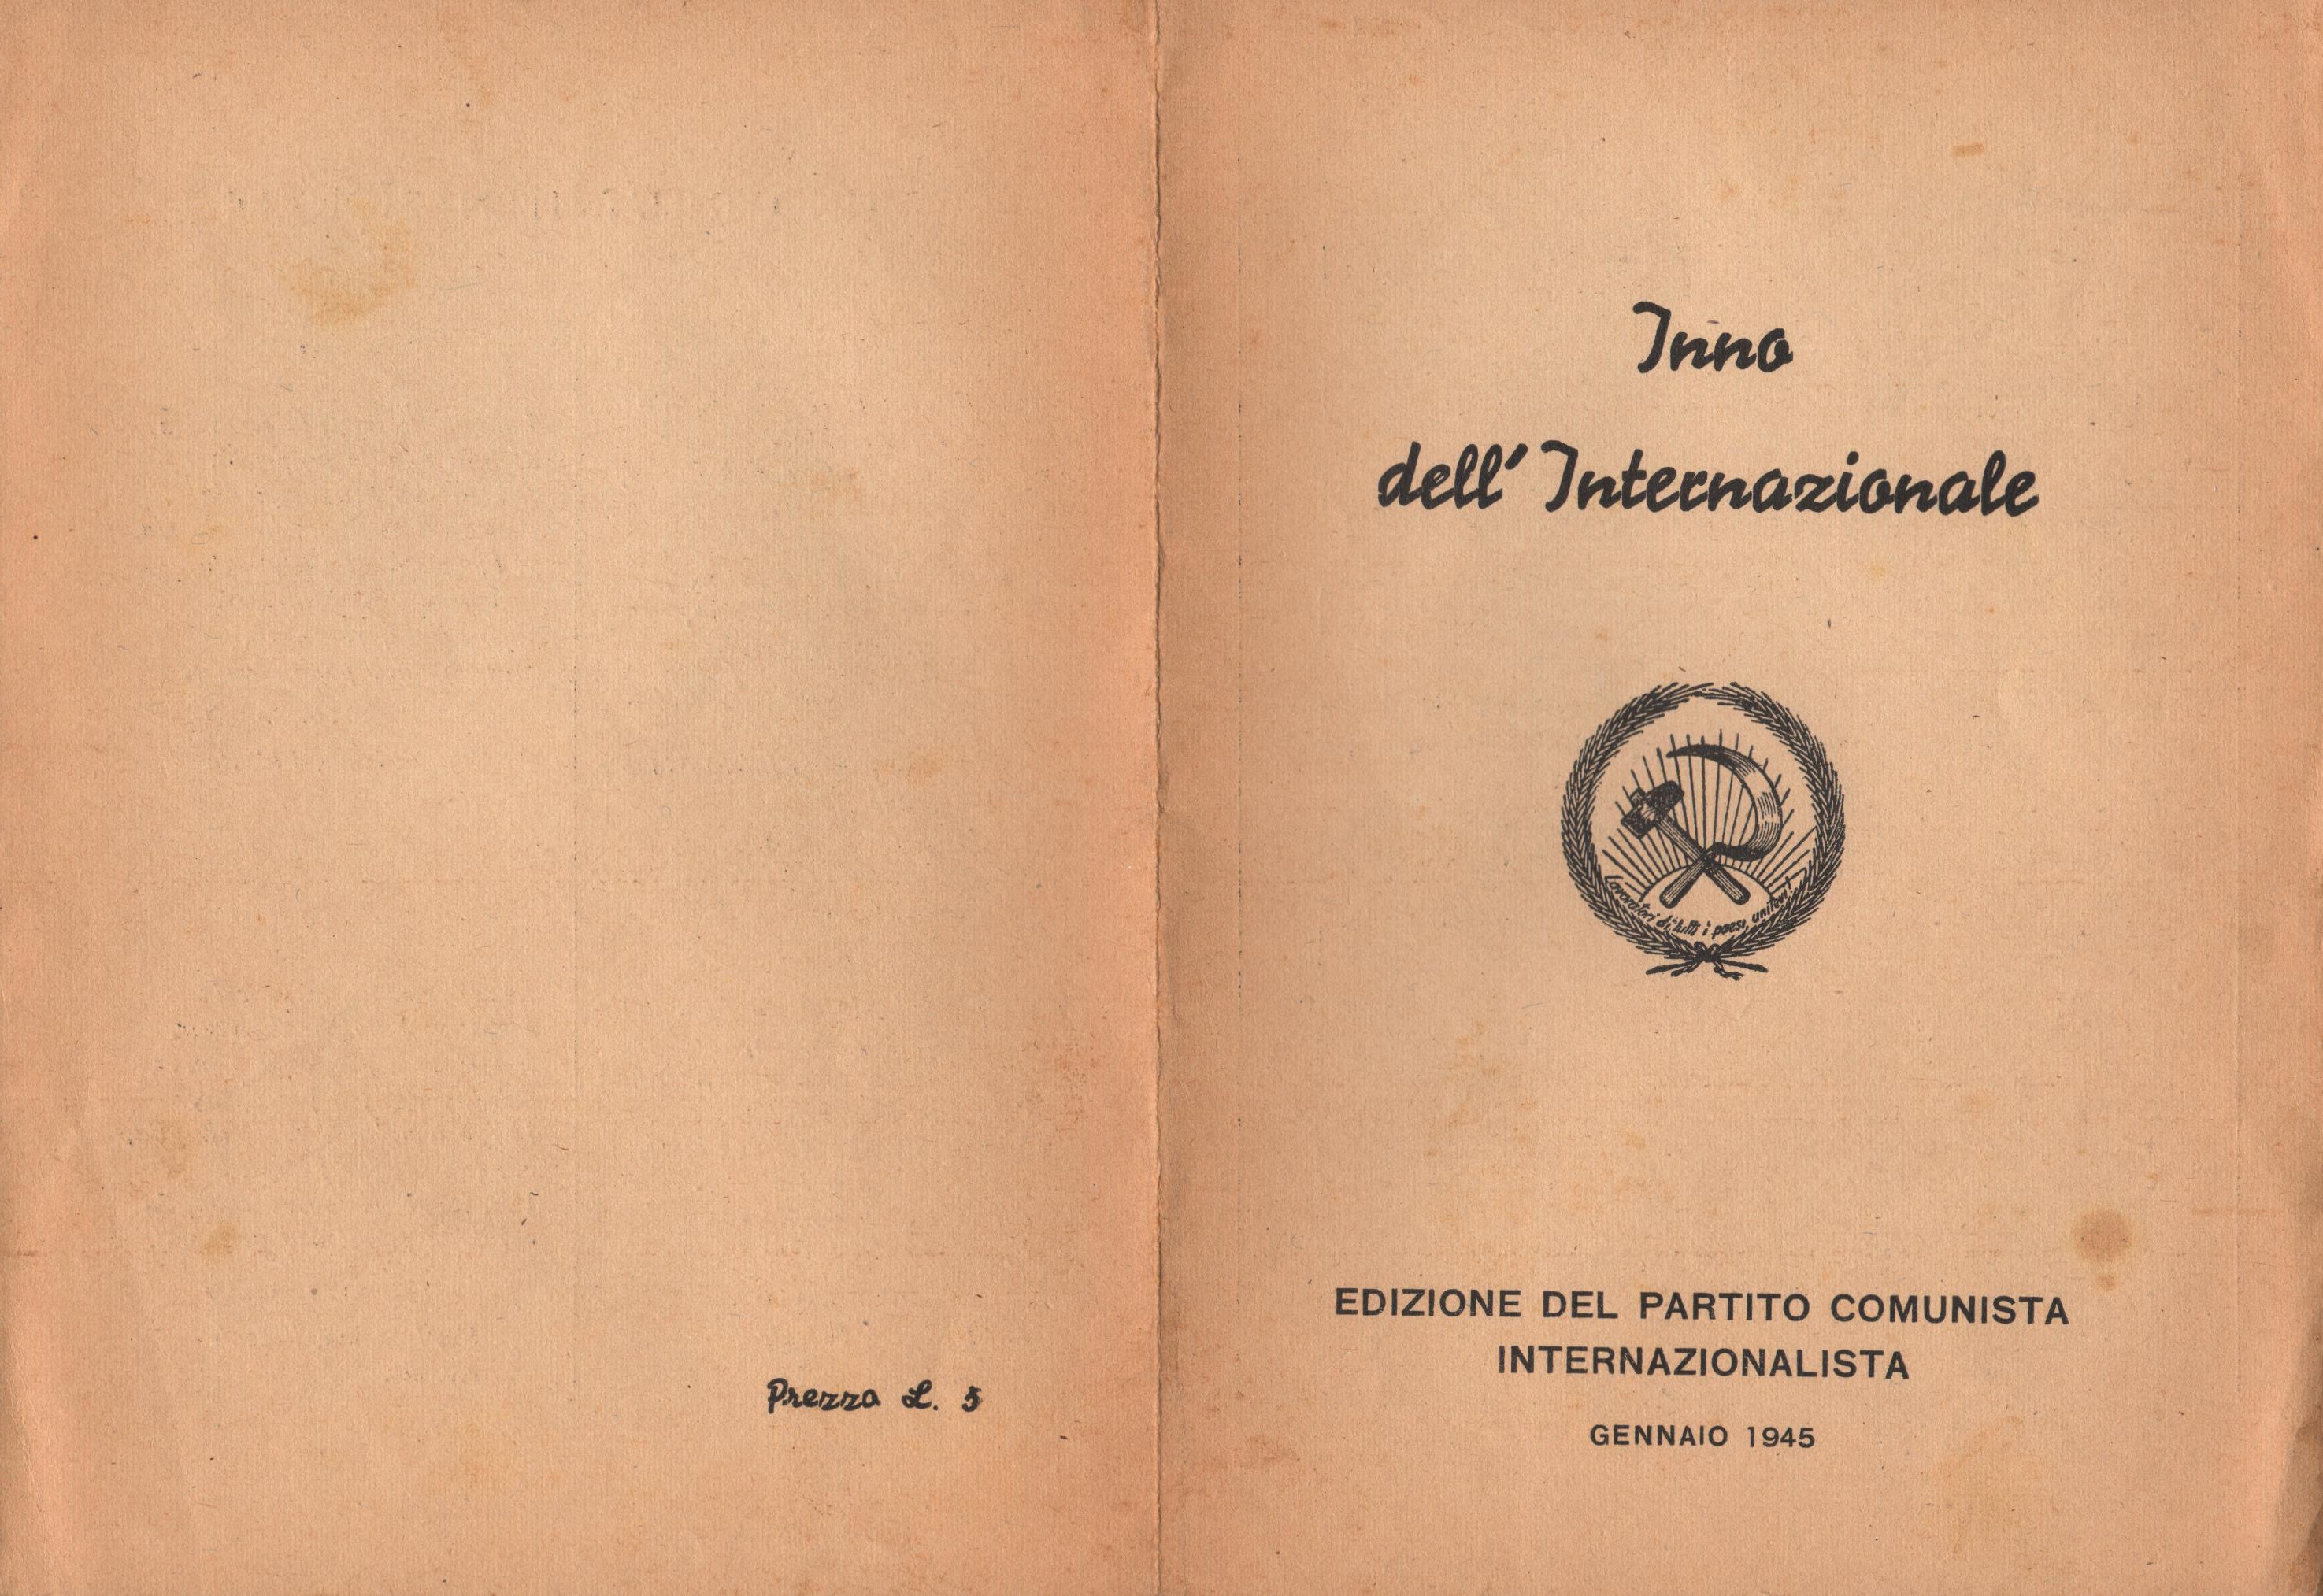 Inno dell'Internazionale (Edizione del Partito Comunista Internazionalista, gennaio 1945) - pag. 1